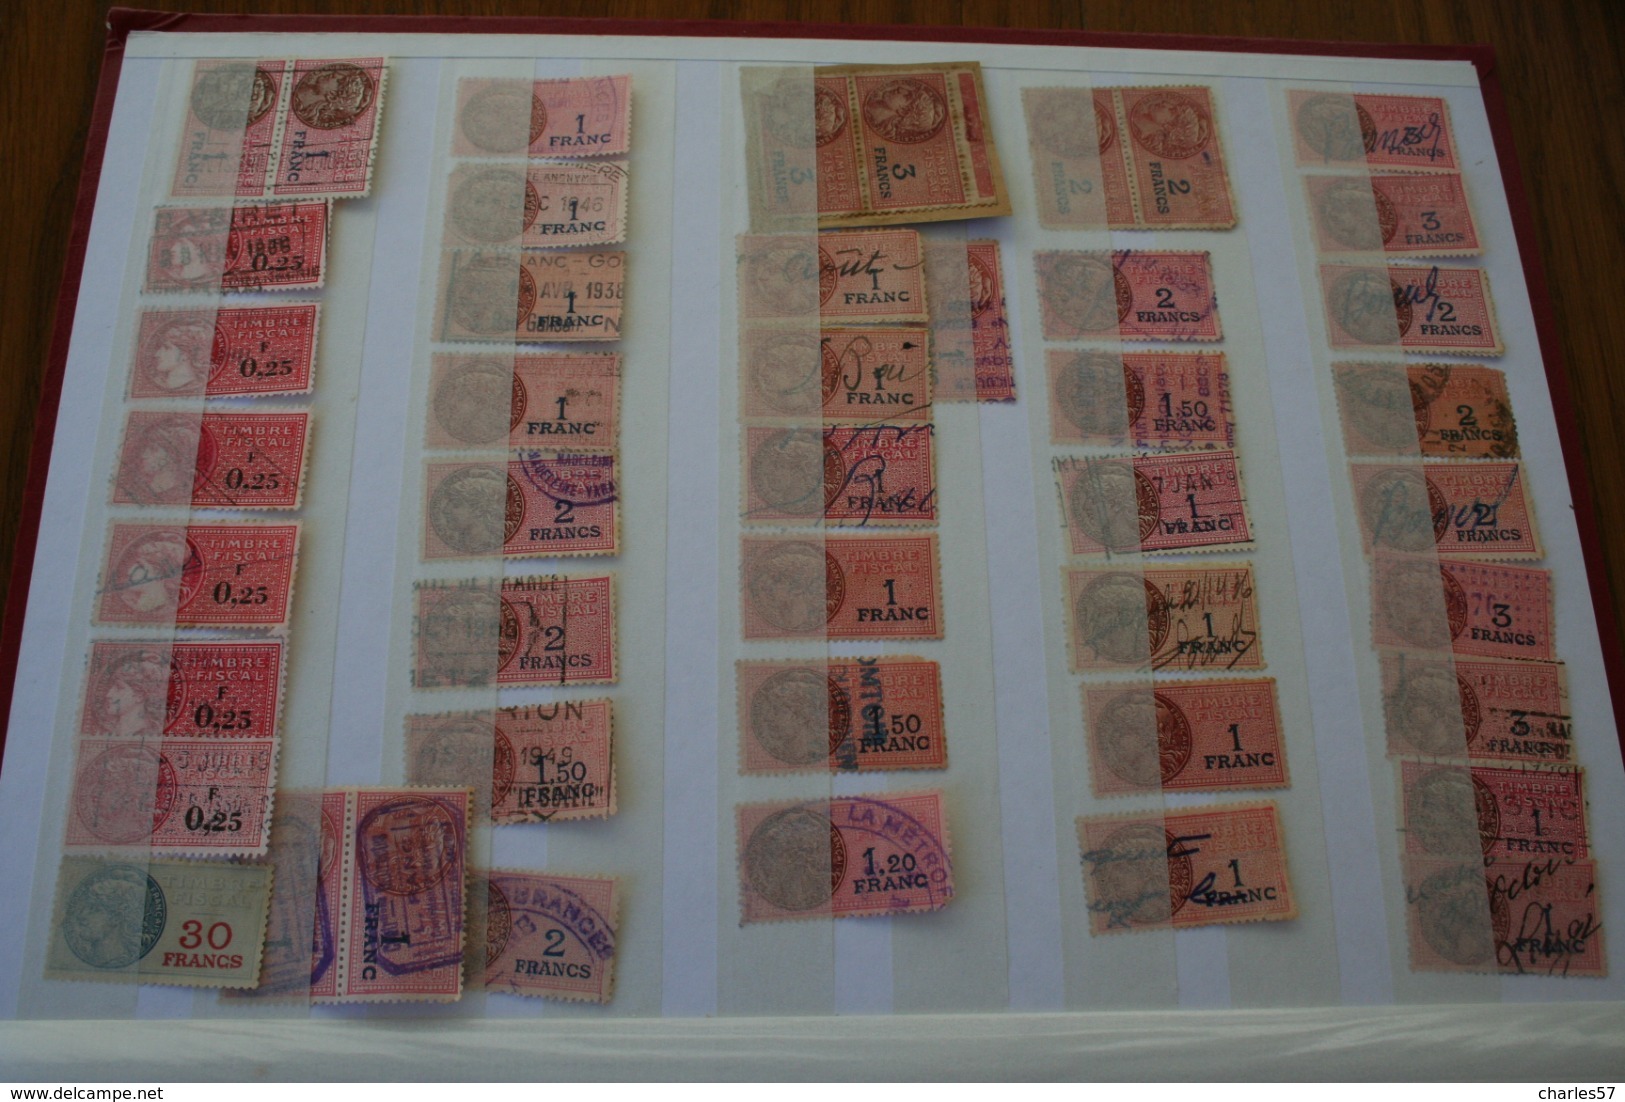 Très joli ensemble et très varié , 7 pages de timbres fiscaux